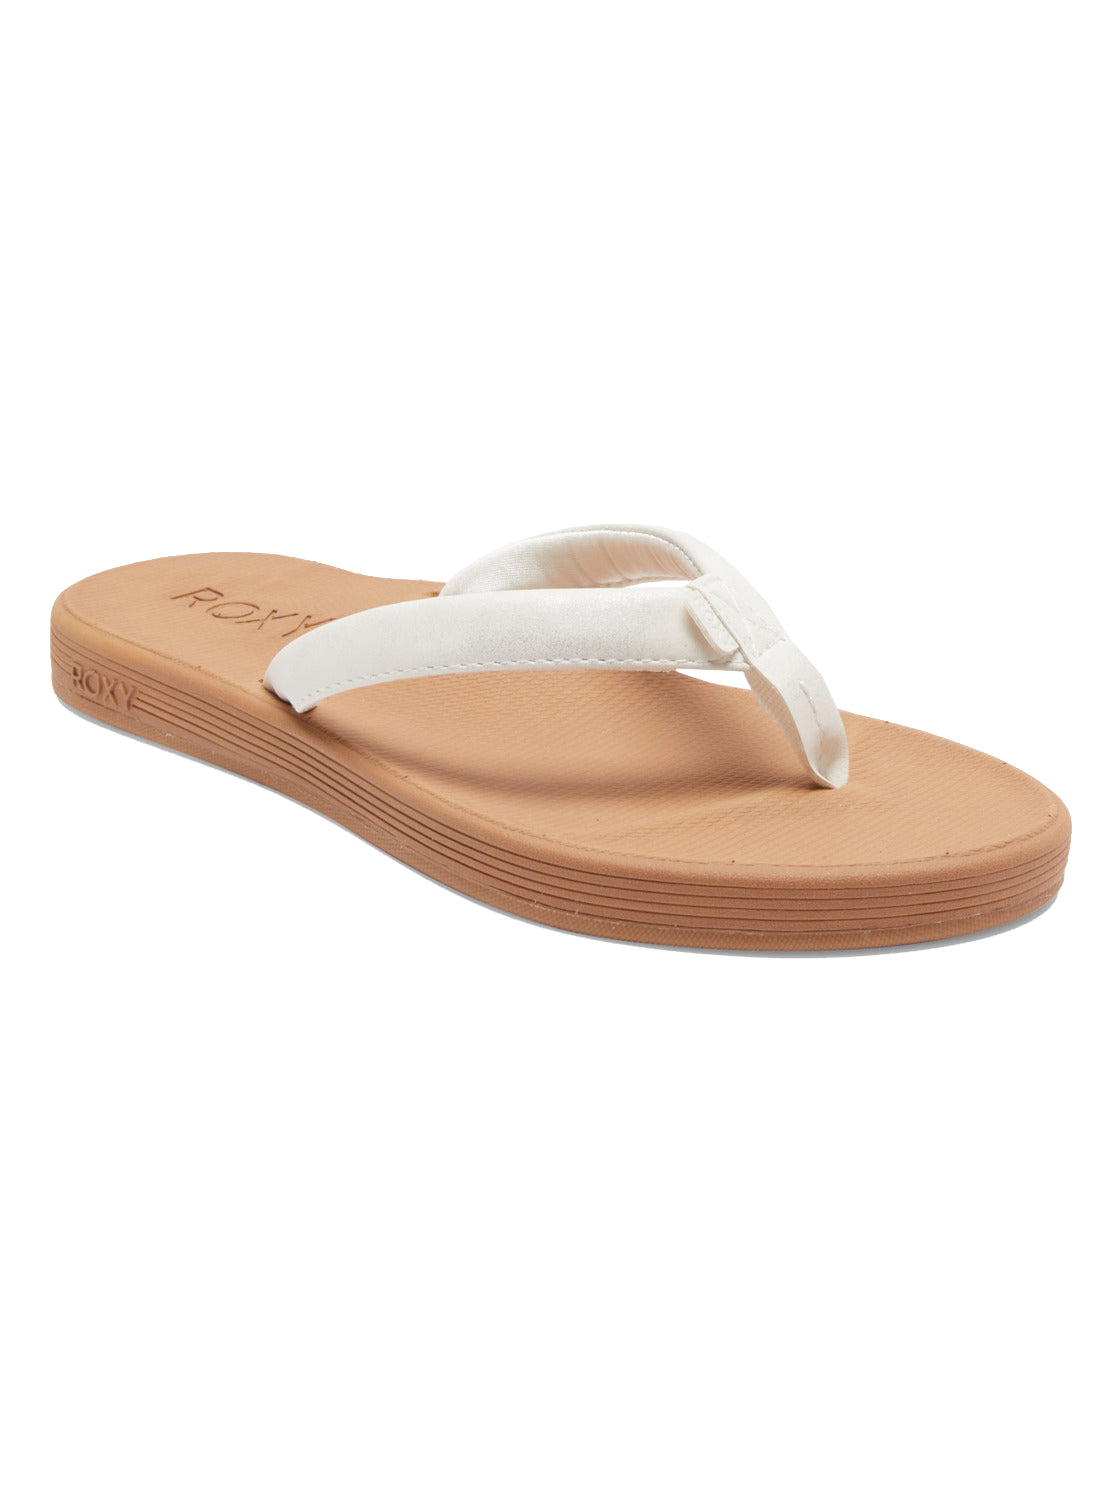 Roxy Solana Womens Sandal WHT-White 8